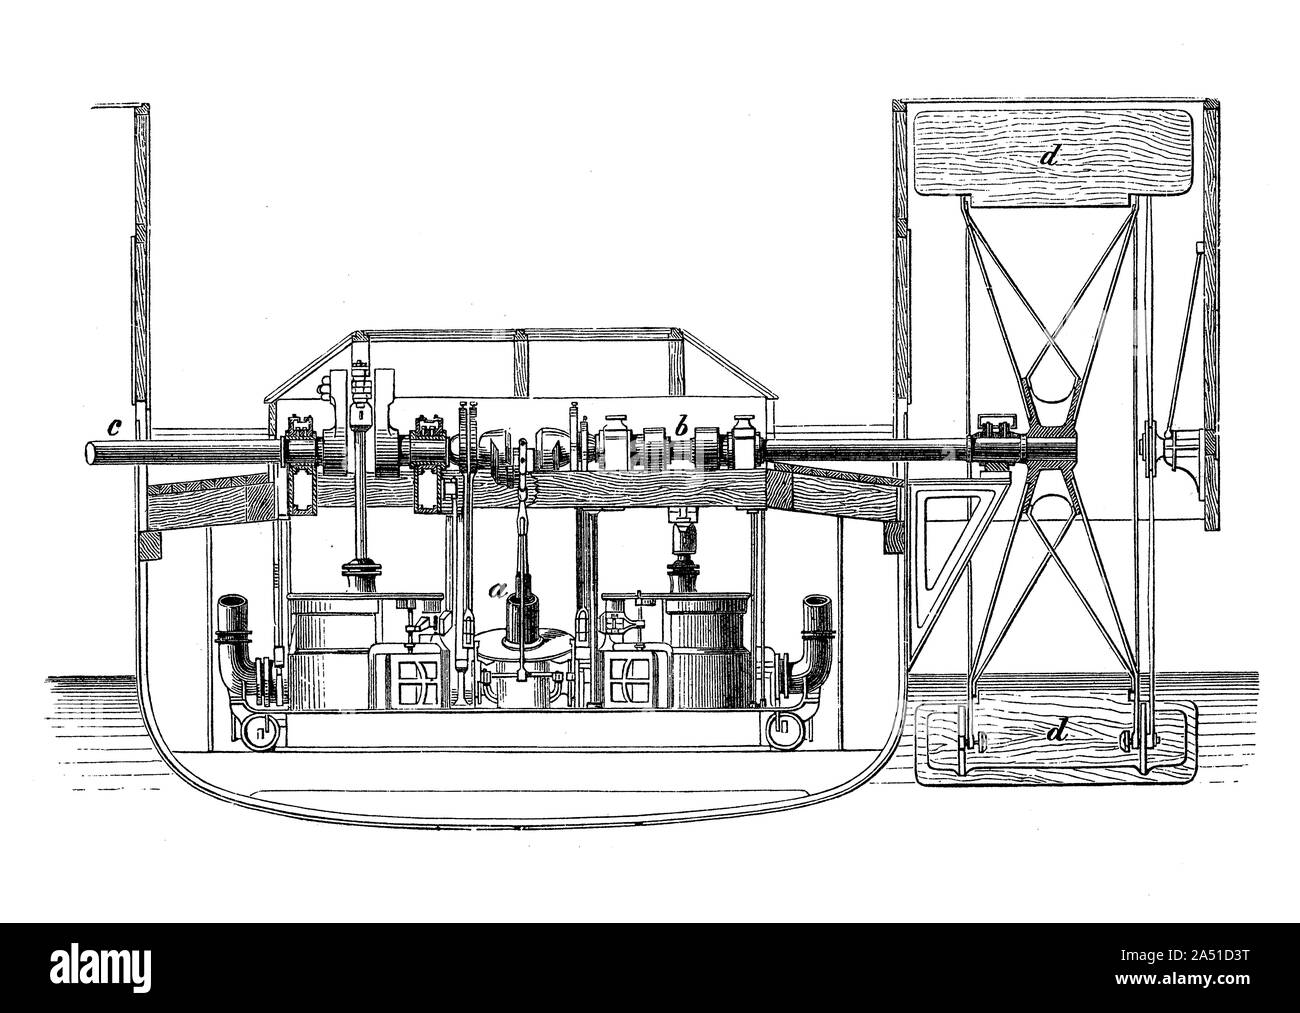 Deux cylindres moteur oscillant pour pagayer-vapeur entraîne les roues à aubes, pour propulser l'engin dans l'eau Banque D'Images